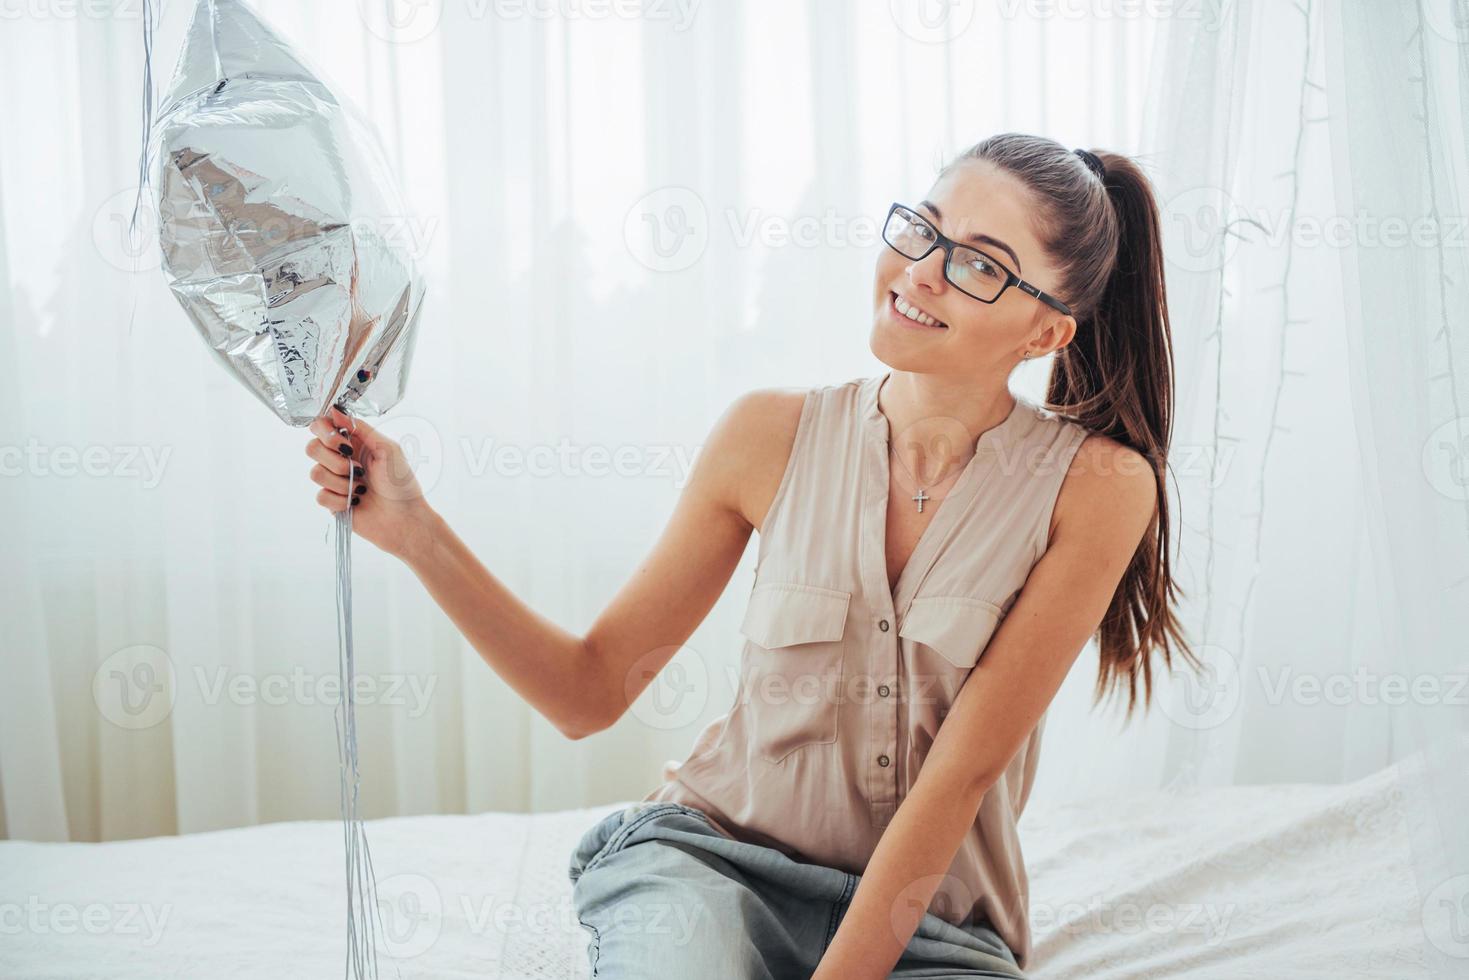 primer plano linda chica morena en el estudio, sonriendo ampliamente y jugando con globos transparentes y plateados. ella usa anteojos y cabello retorcido. foto